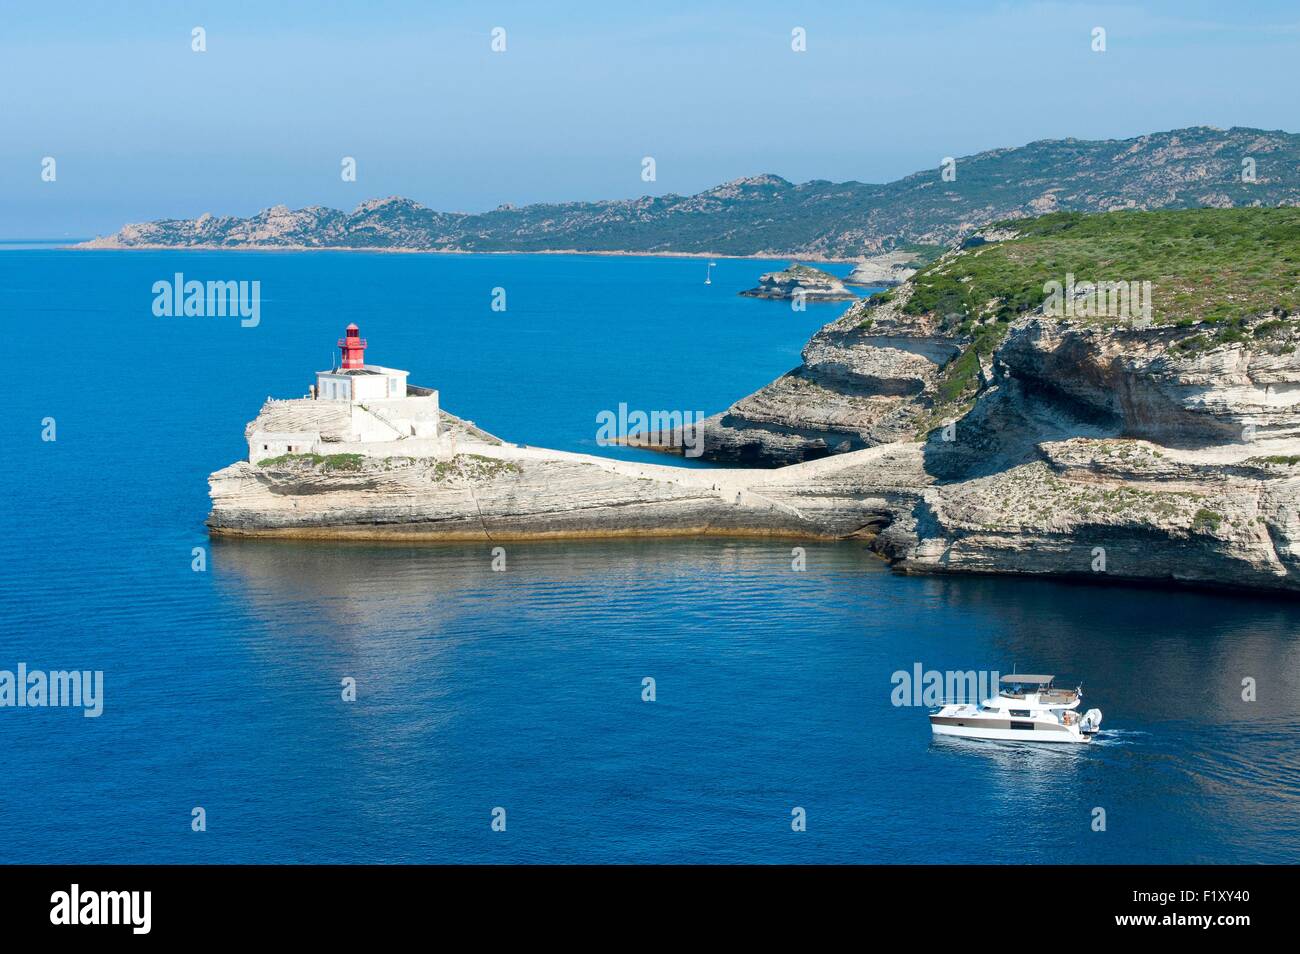 France, Corse du Sud, Bonifacio, Madonetta lighthouse, boat outgoing at sea Stock Photo